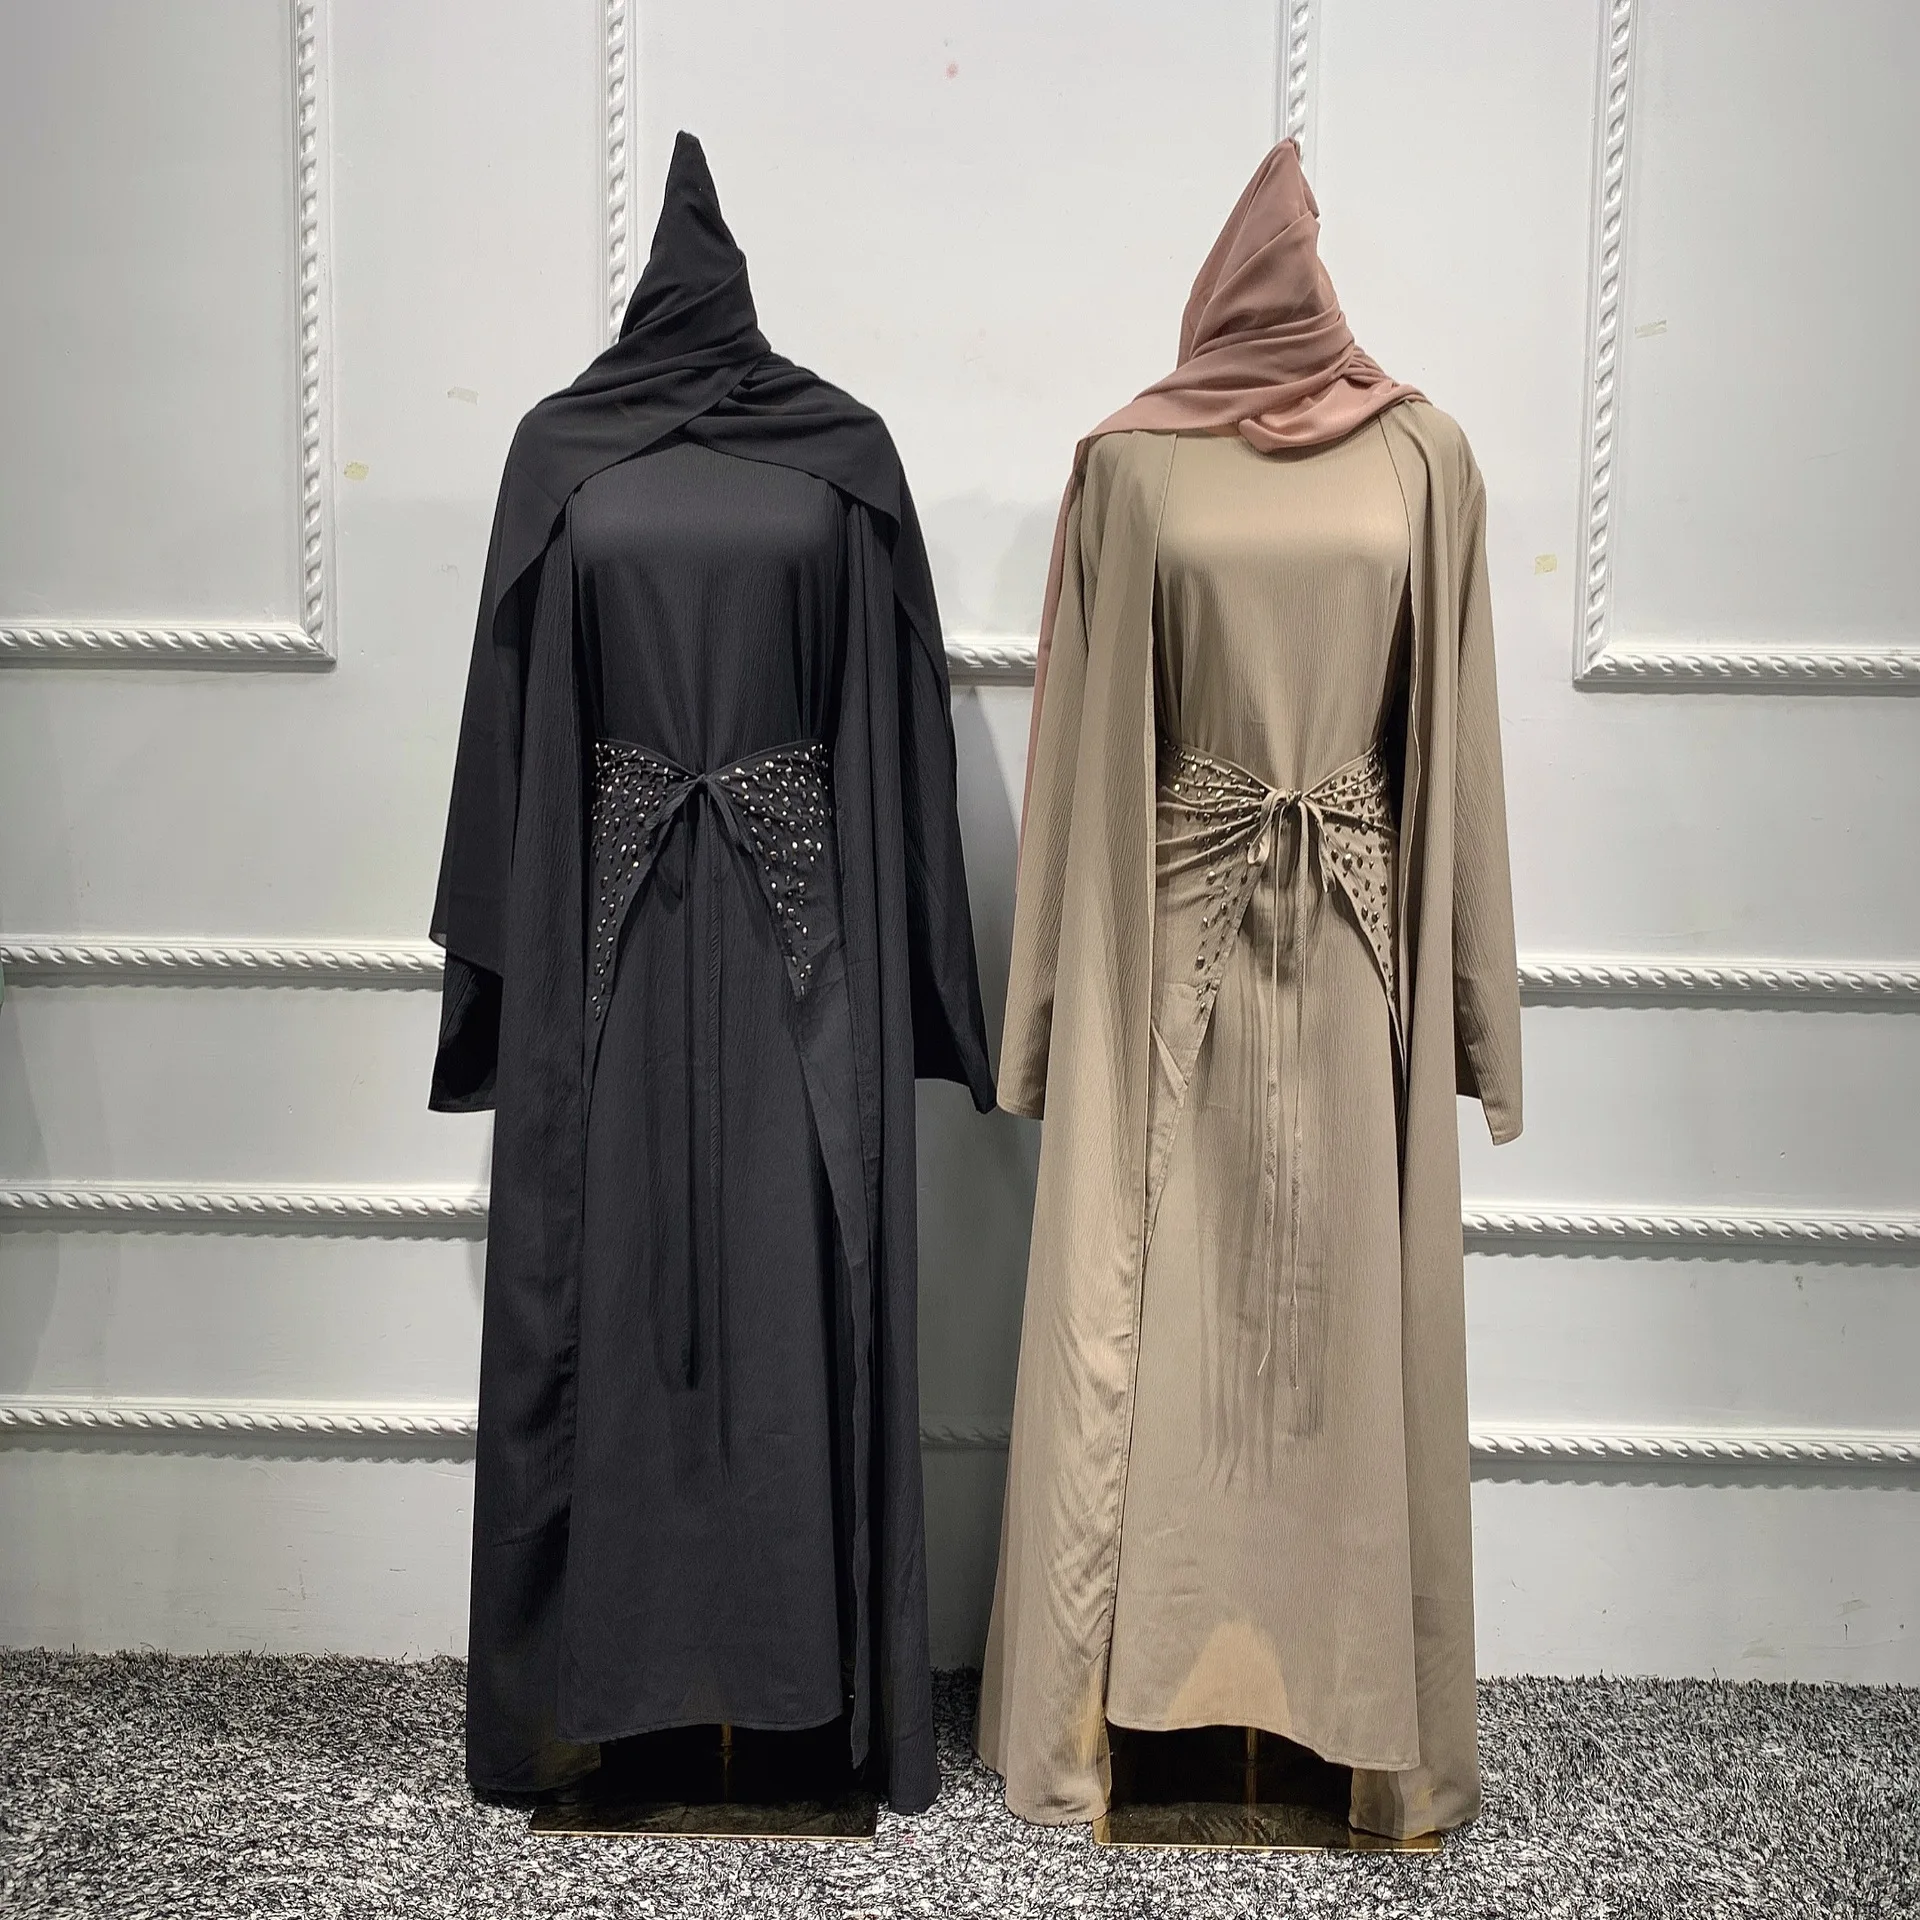 מלאכת-יד חרוזים 3 חתיכה המוסלמים להגדיר התאמת הלבוש מקומט קרפ פתוח Abaya קימונו שרוול ארוך שמלה לעטוף את החצאית דובאי סתיו - 4